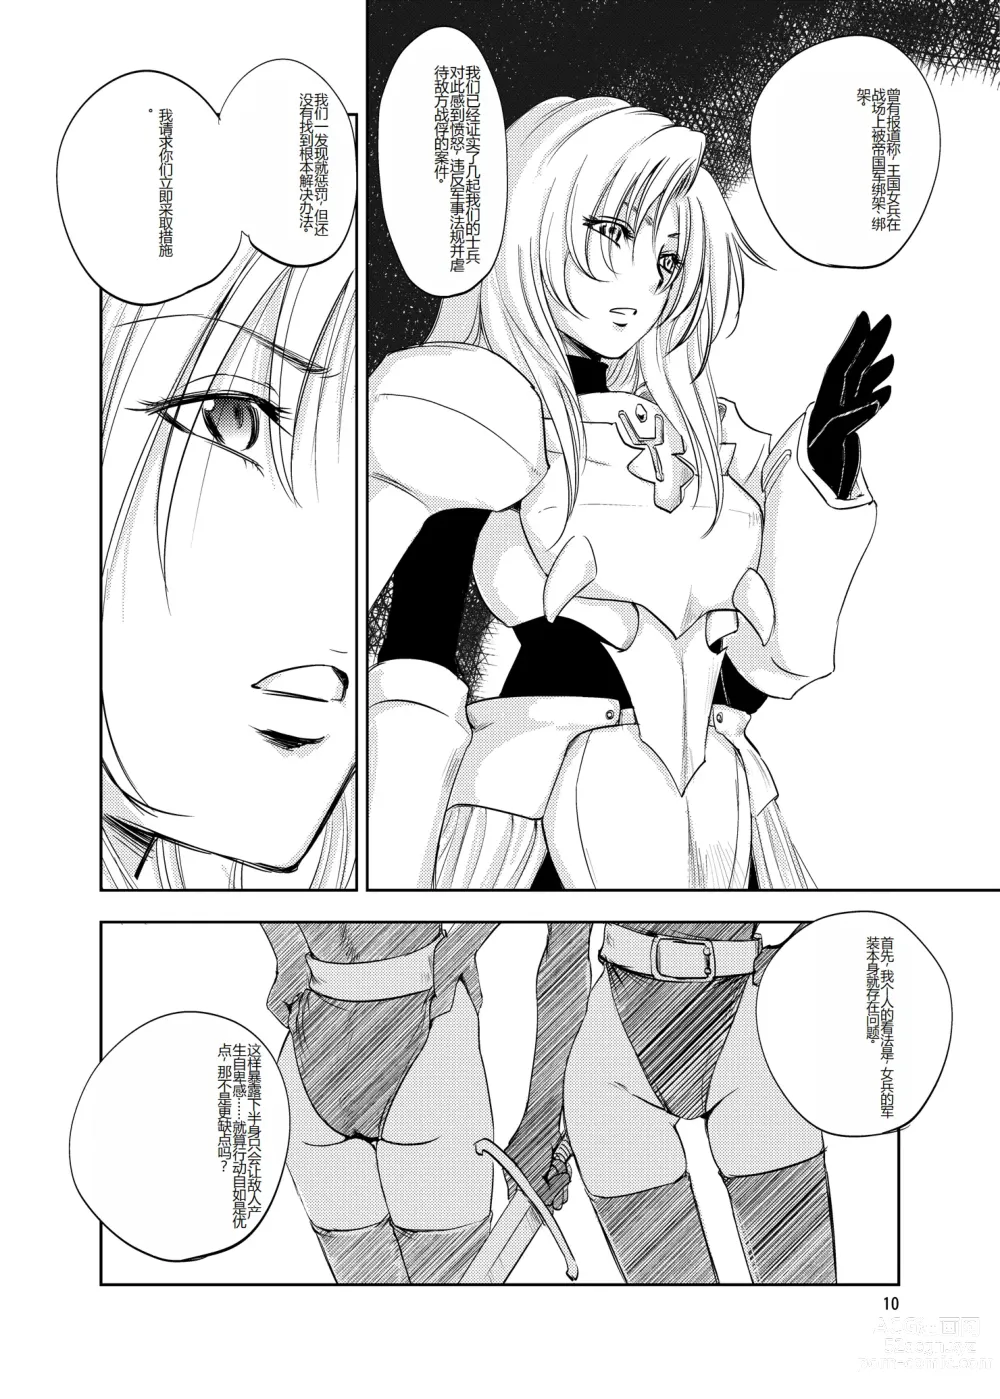 Page 10 of doujinshi GRASSENS WAR ANOTHER STORY Ex #02 Node Shinkou II